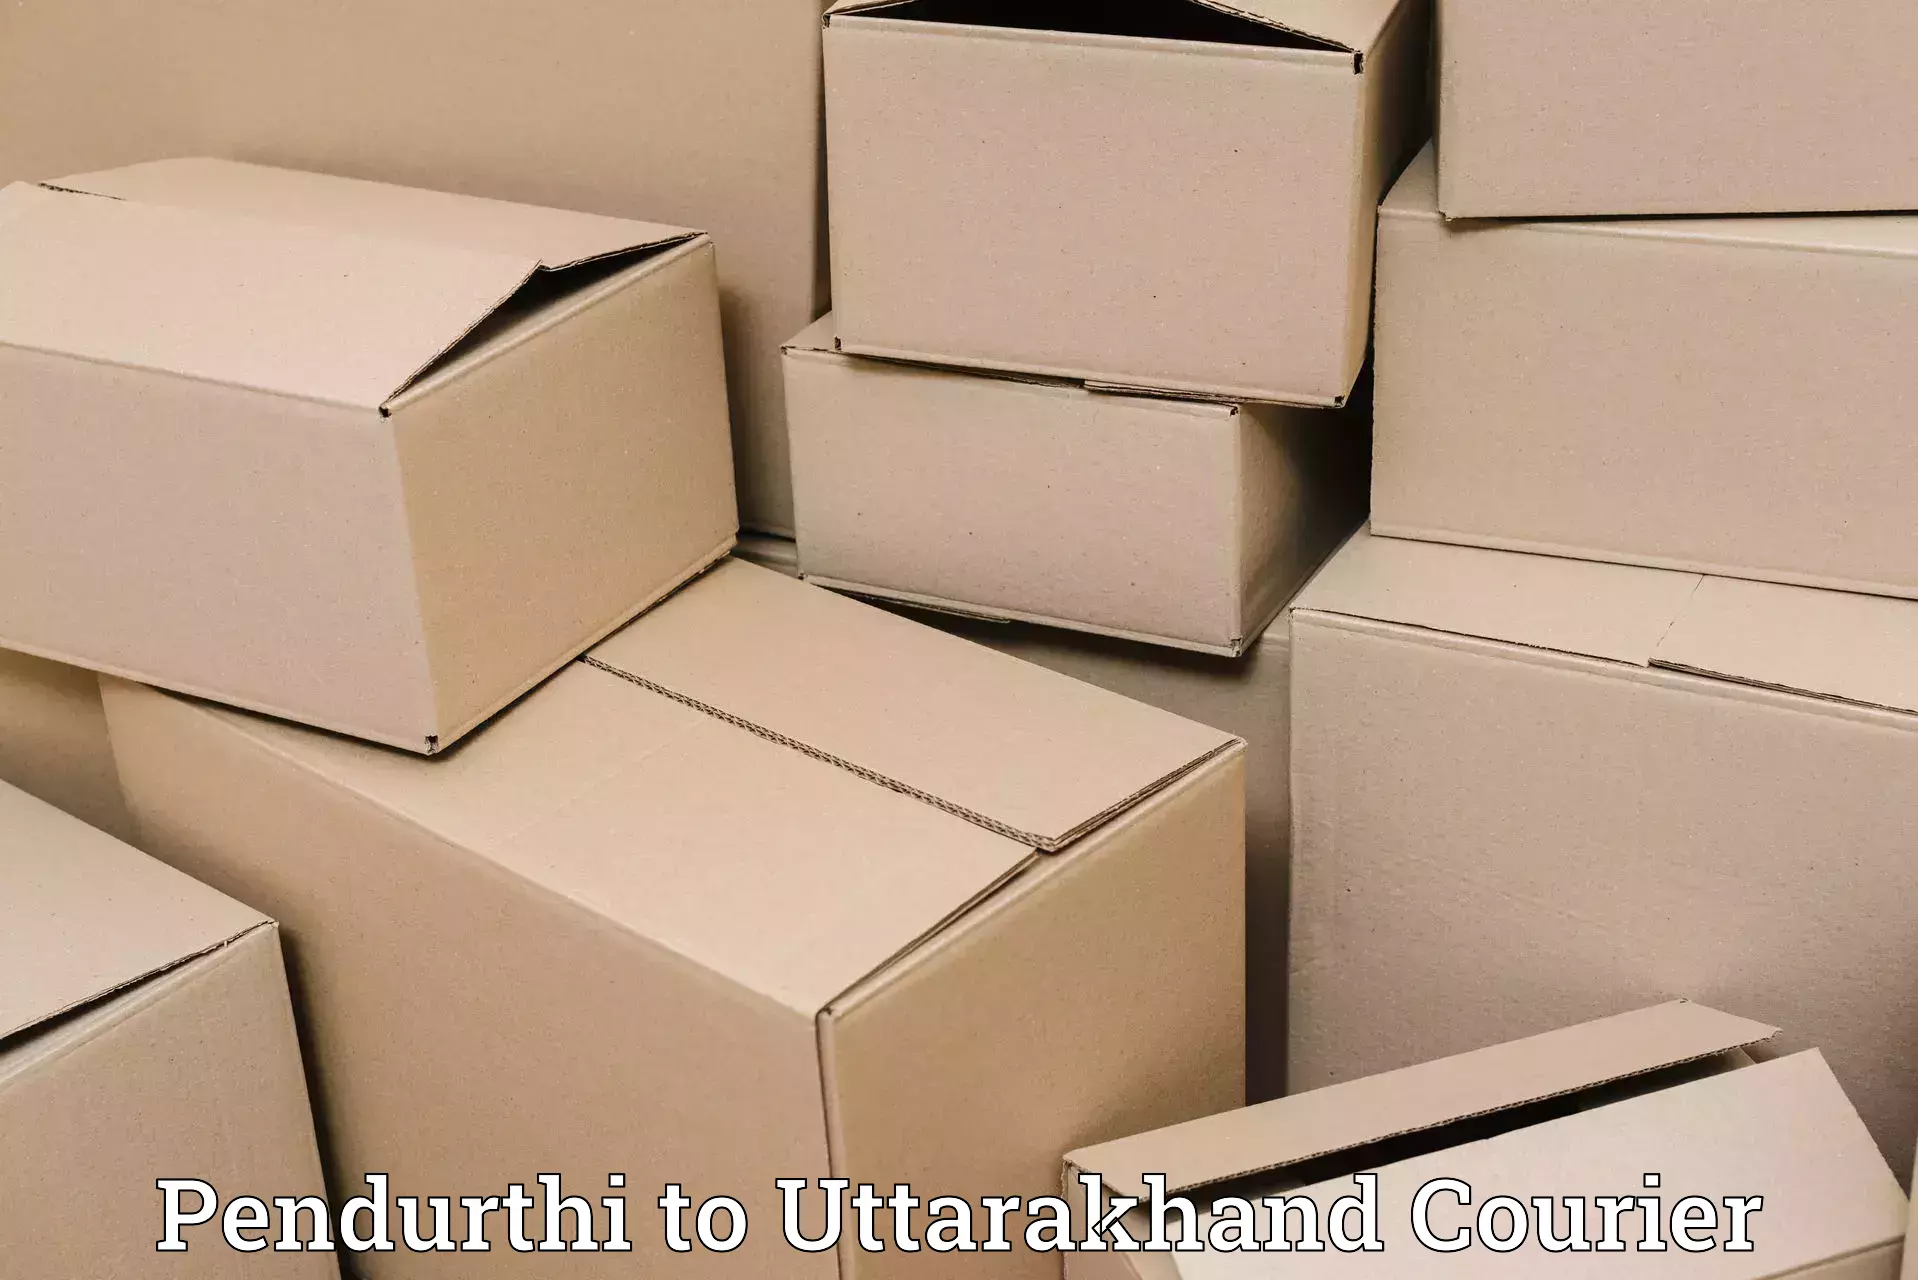 High-speed delivery Pendurthi to Baijnath Bageshwar